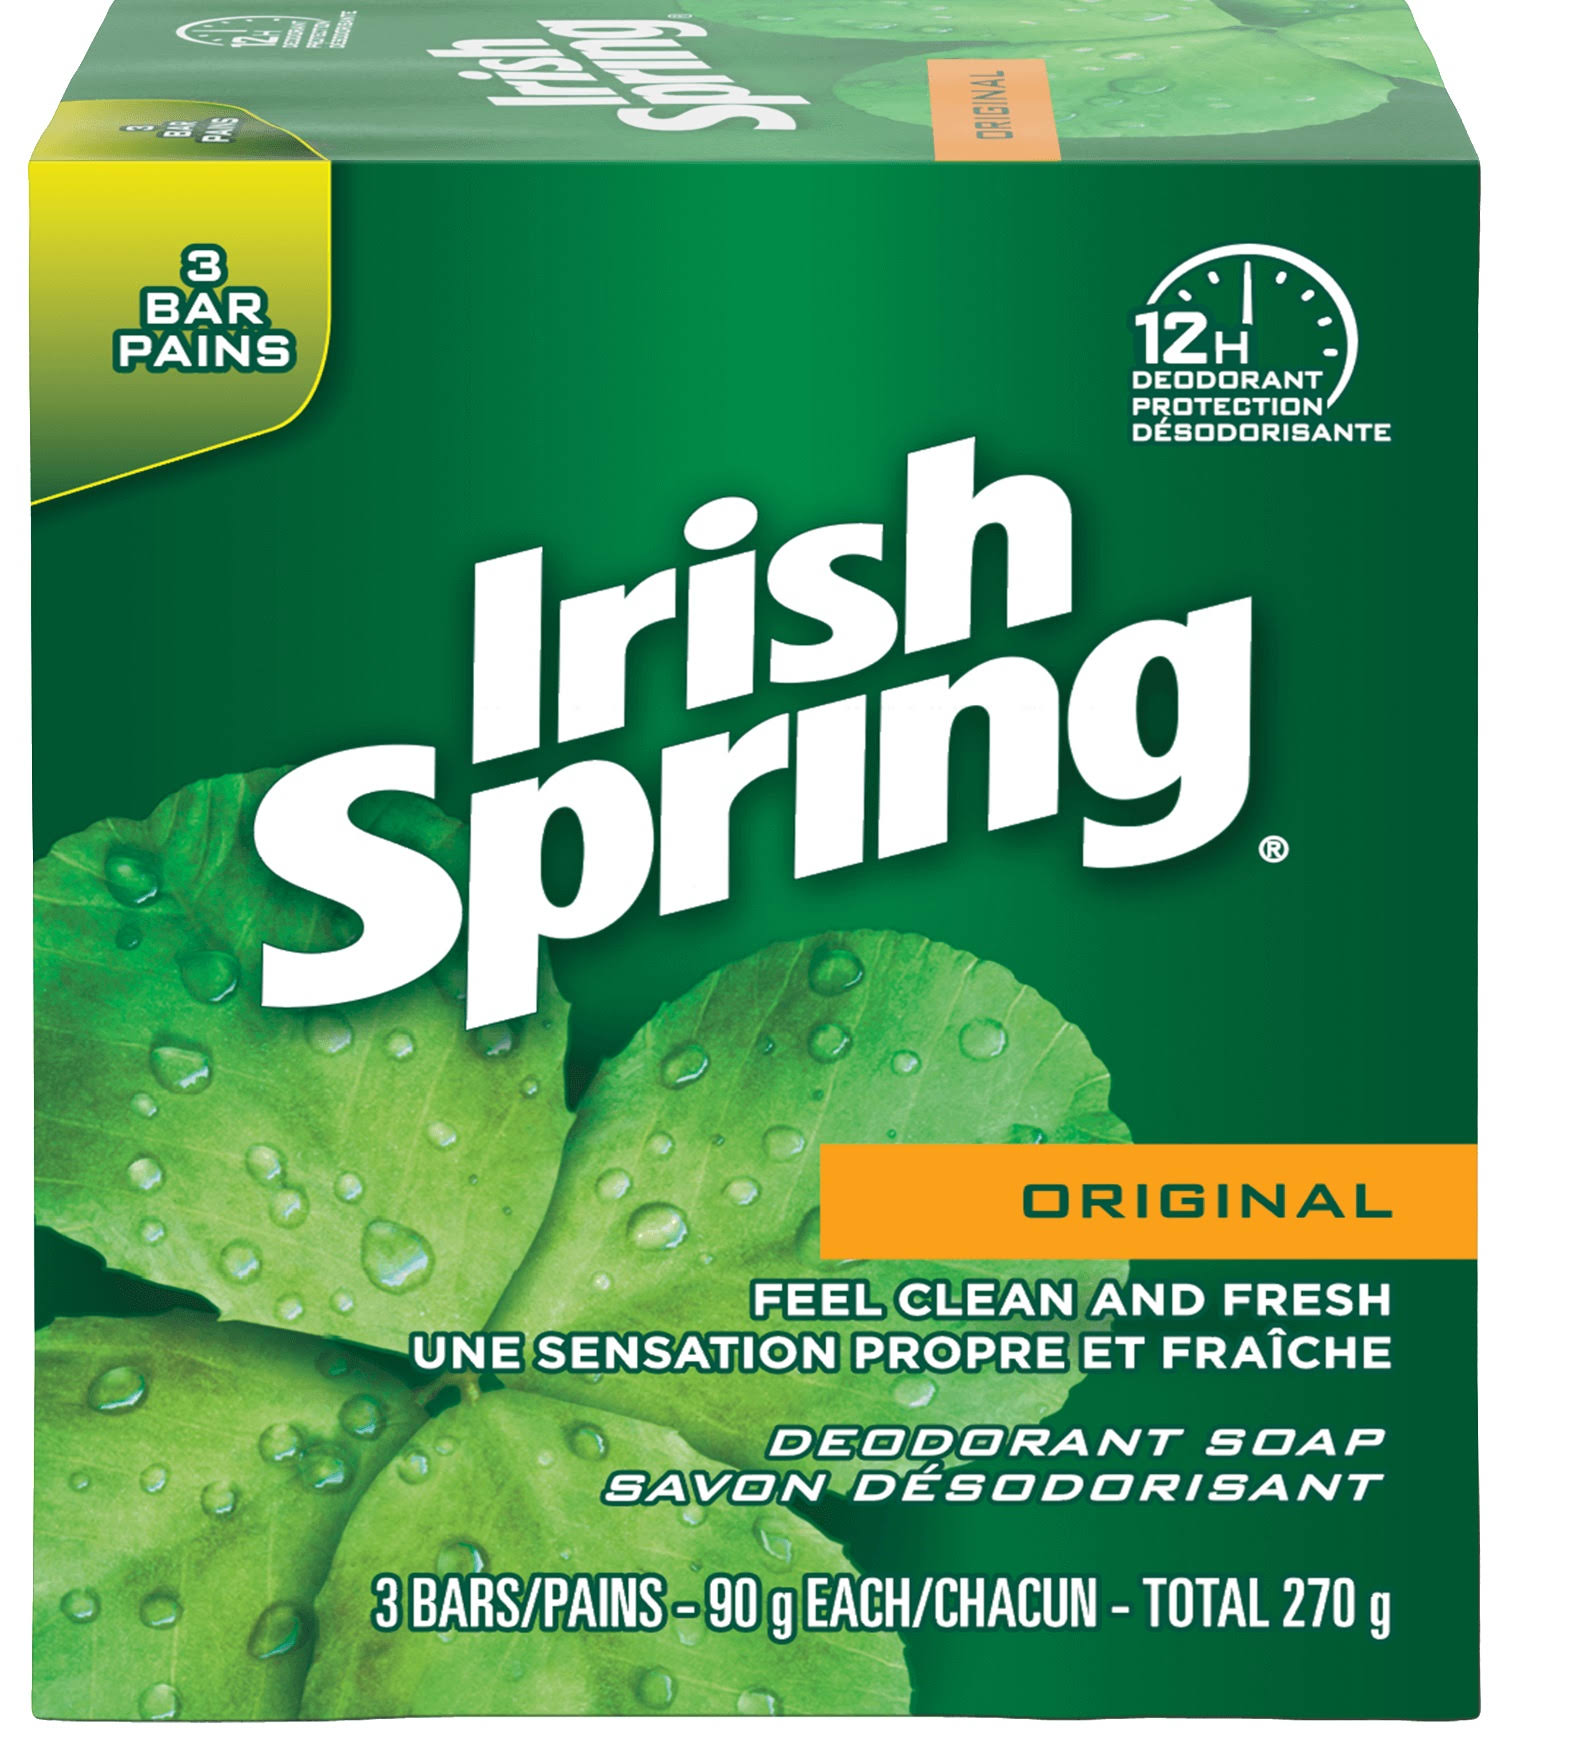 Irish Spring Original Bar Soap